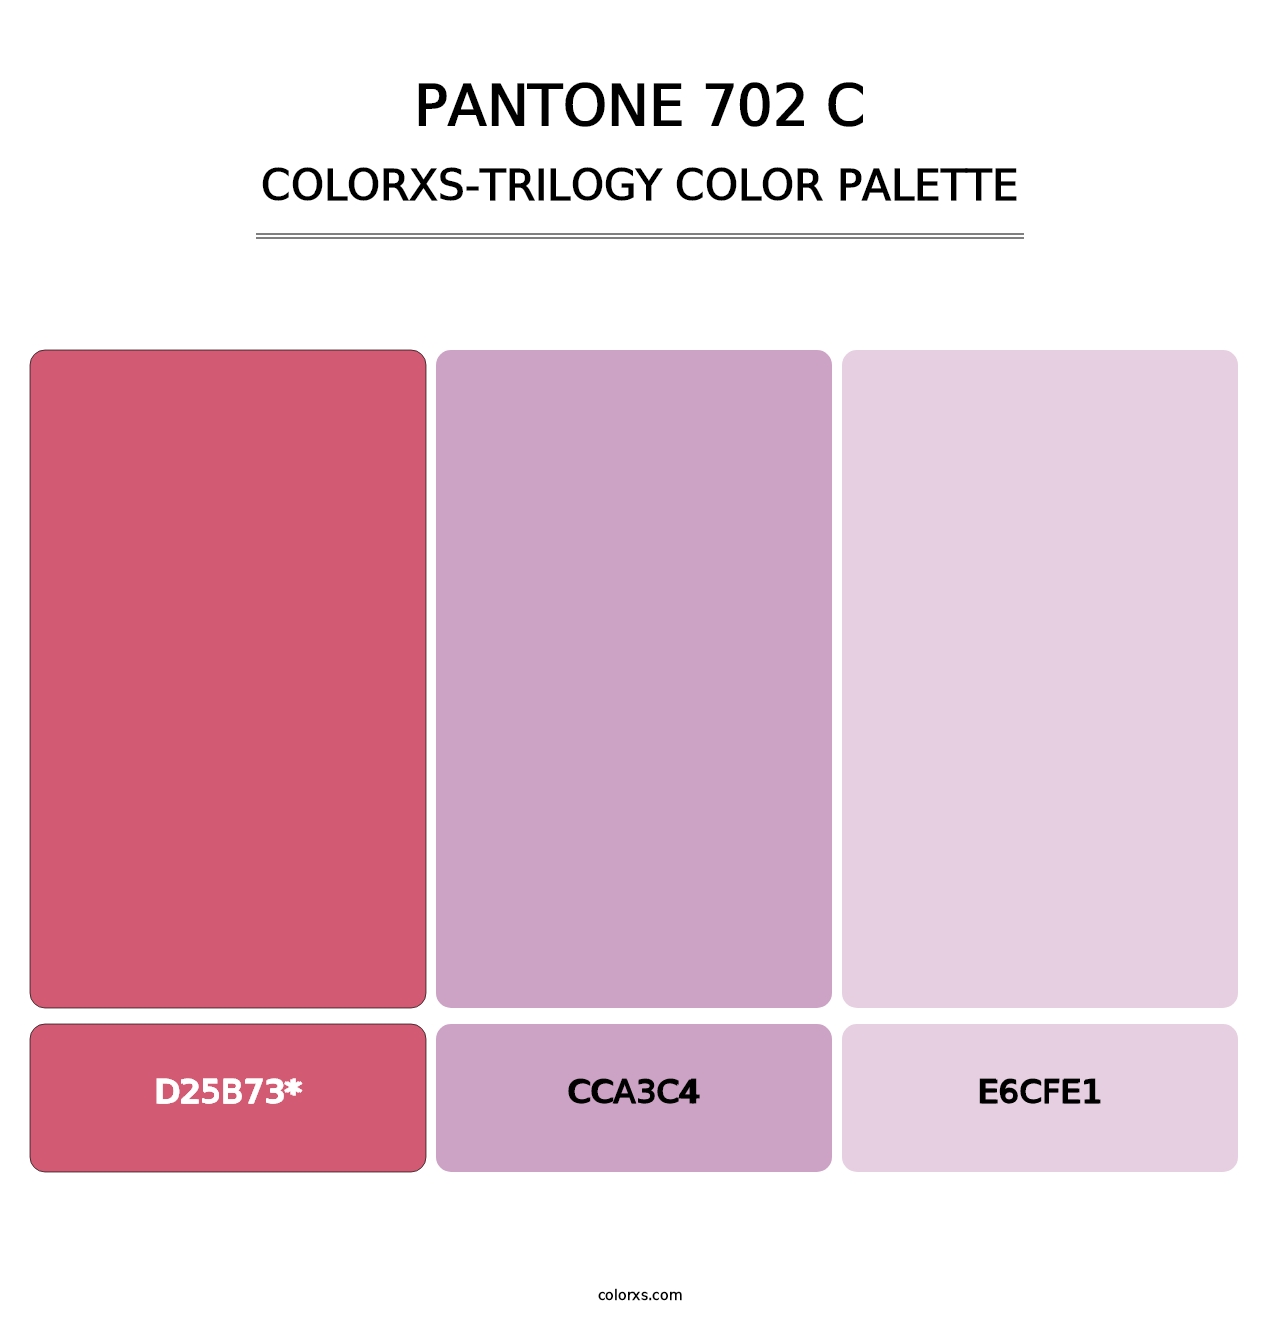 PANTONE 702 C - Colorxs Trilogy Palette